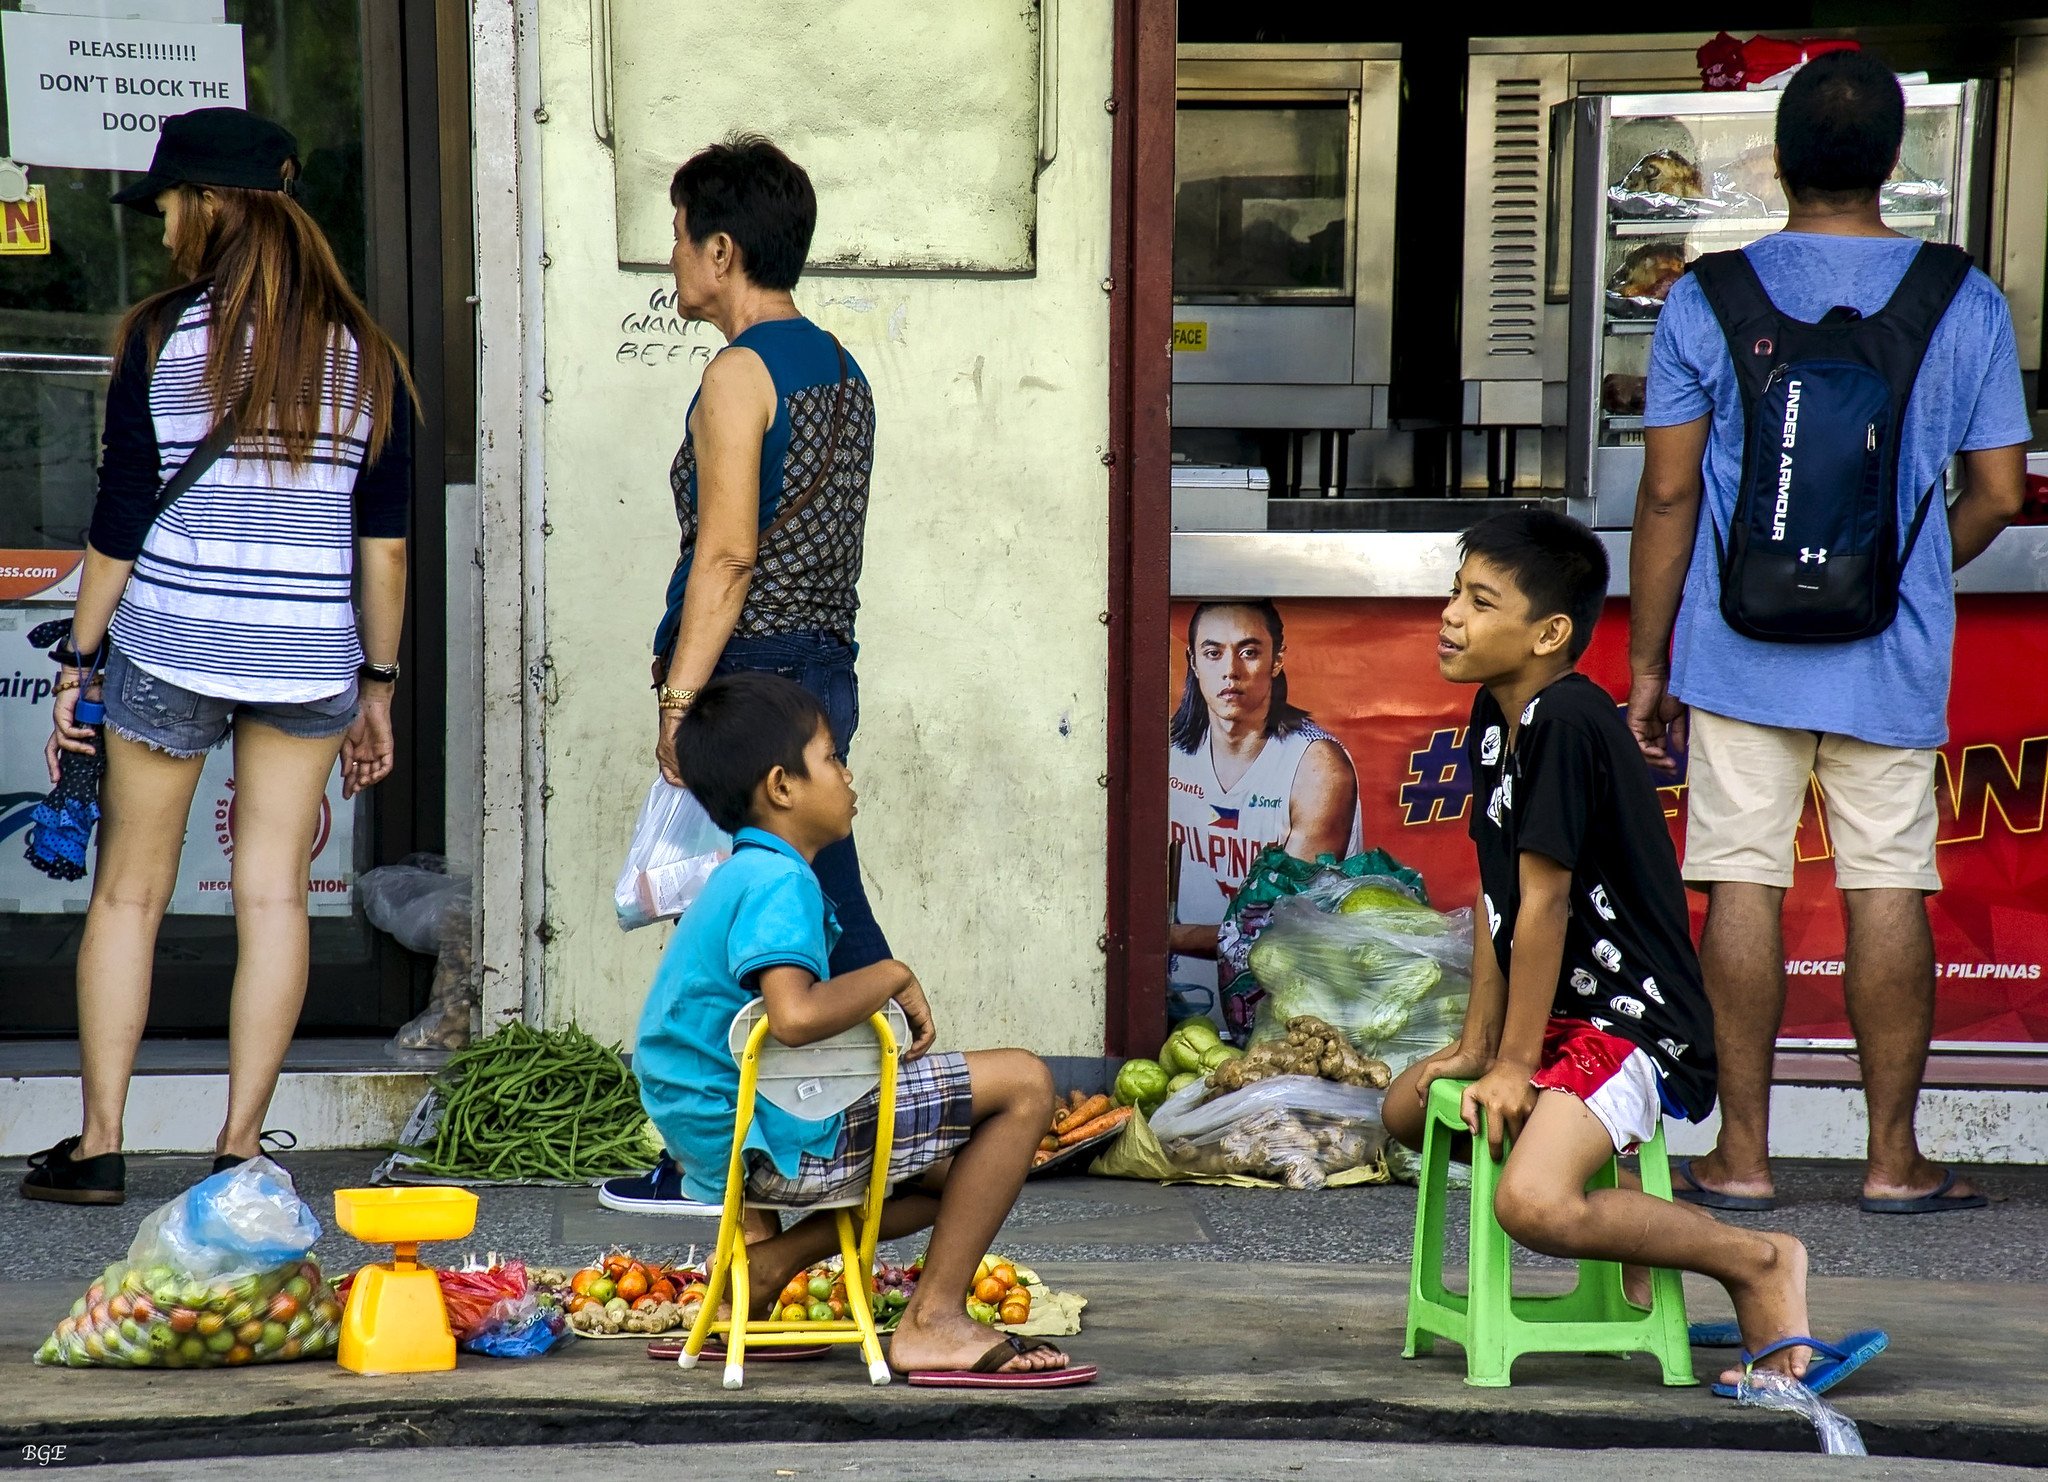 Niños conversando mientras muestran vegetales en una acera. | Imagen: Flickr